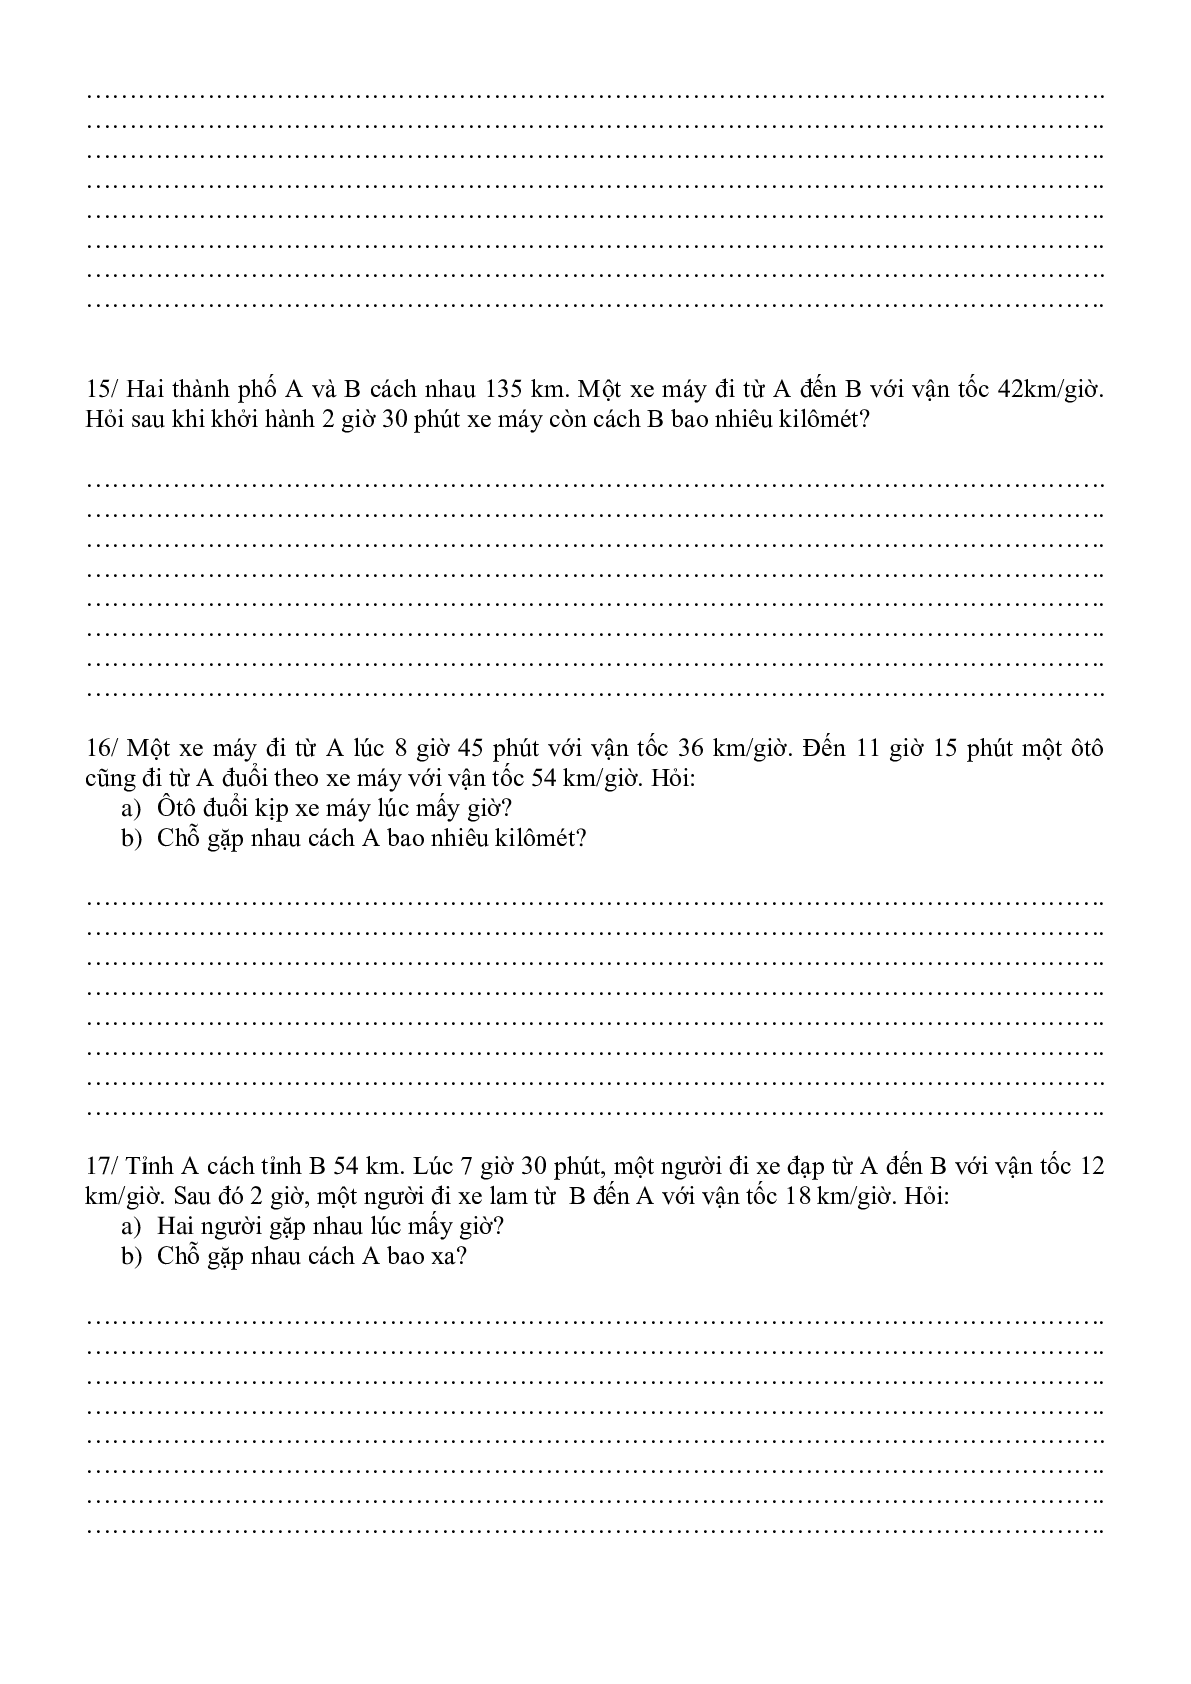 24 bài toán chuyển động môn Toán lớp 5 (trang 4)